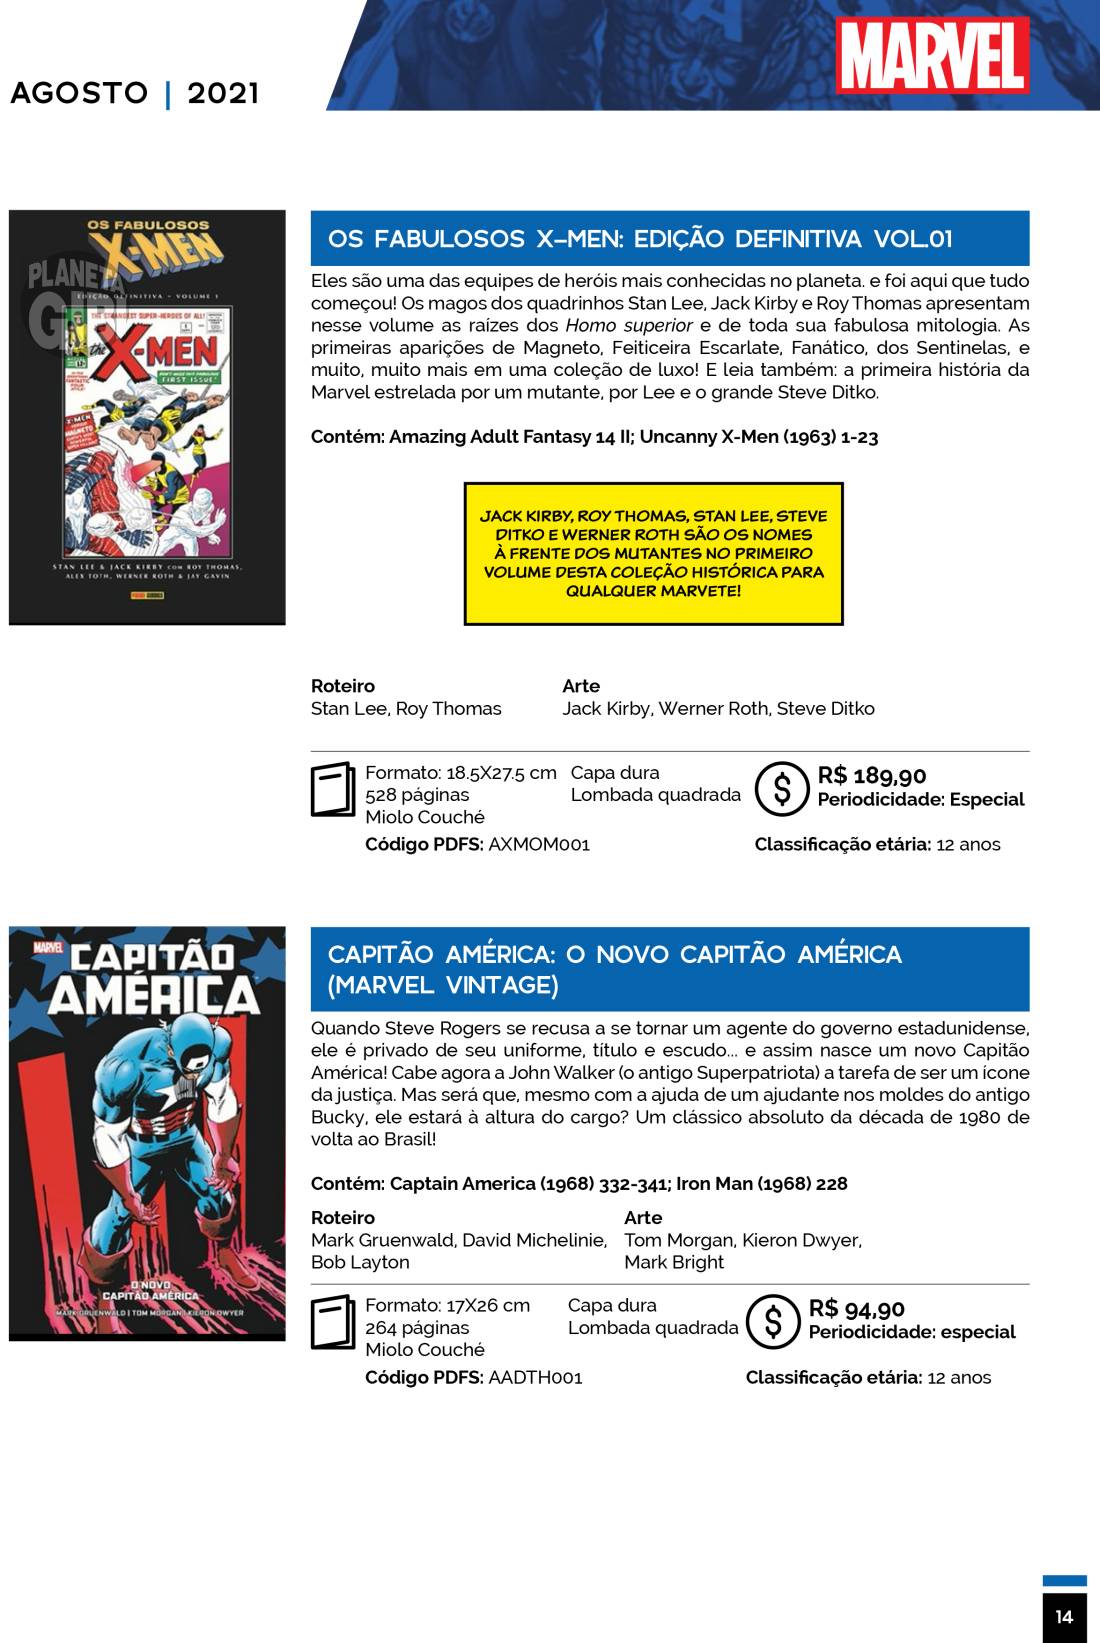 13 - Checklist Marvel/Panini (Julho/2020 - pág.09) - Página 9 Catalogo-Julho-Agosto-14